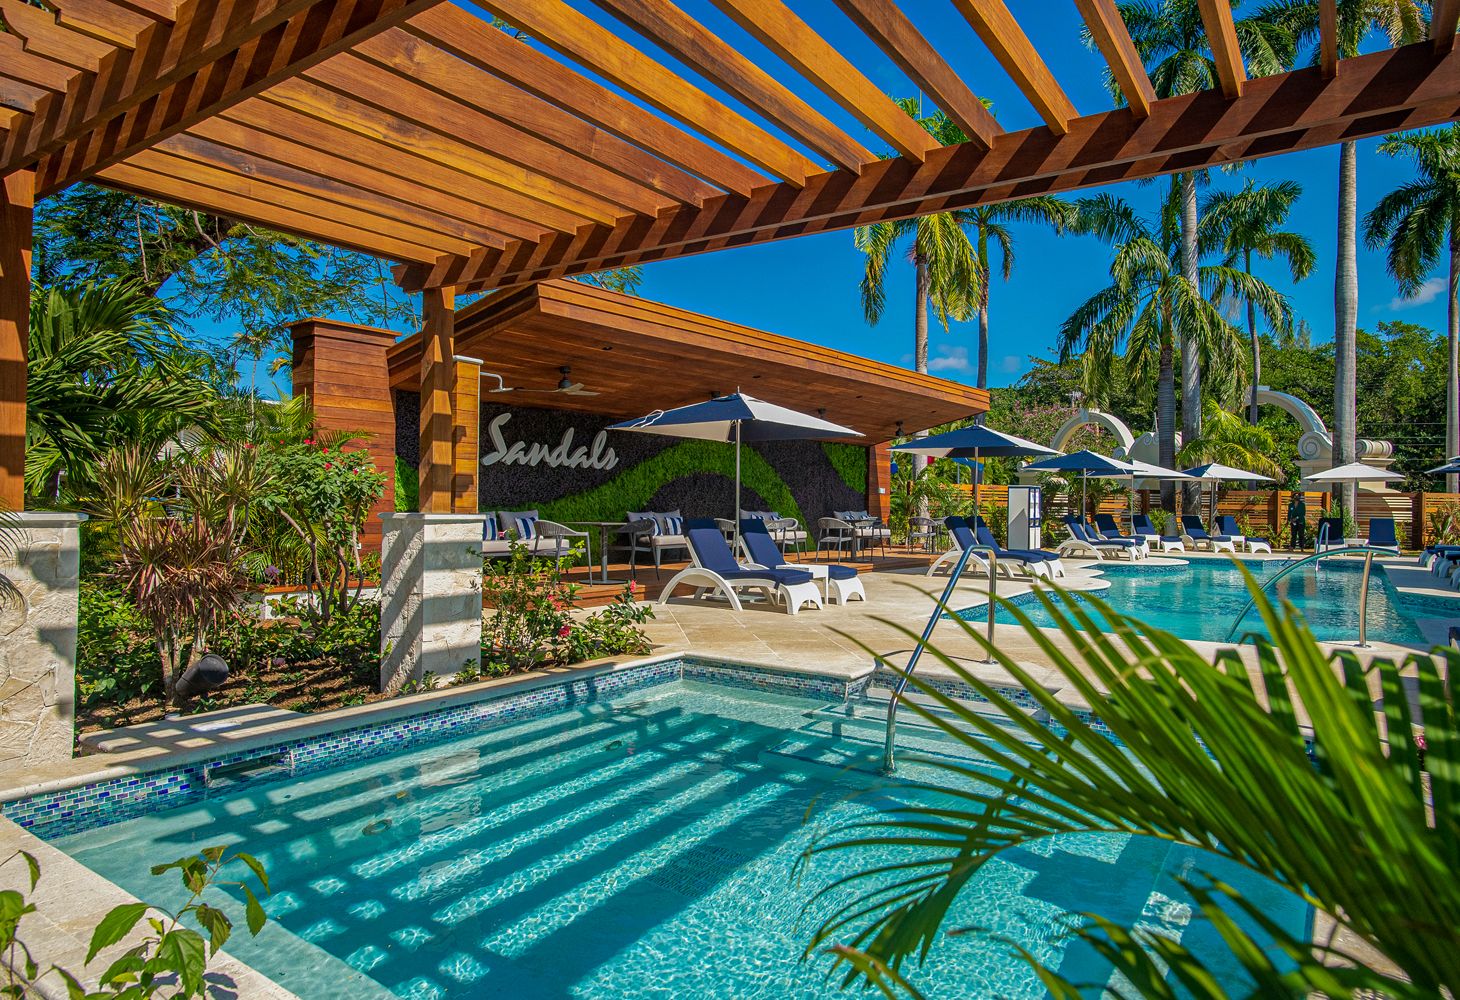 Sandals Royal Caribbean swimming pool